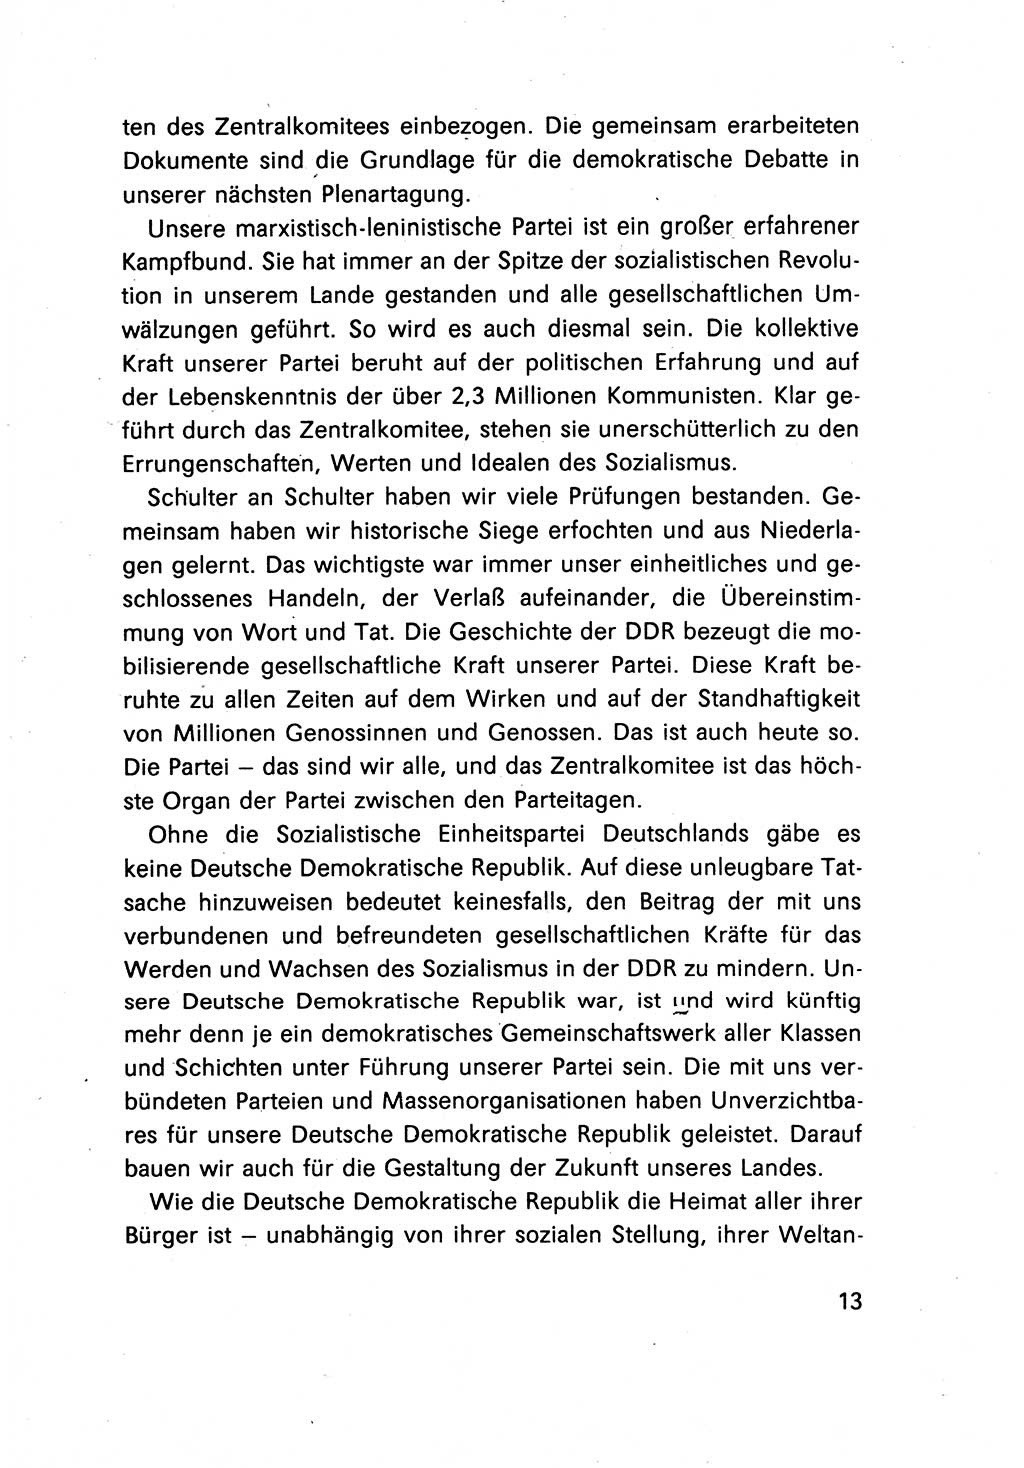 Erklärung des Politbüros des ZK (Zentralkomitee) der SED (Sozialistische Einheitspartei Deutschlands) [Deutsche Demokratische Republik (DDR)] 1989, Seite 13 (Erkl. PB ZK SED DDR 1989, S. 13)